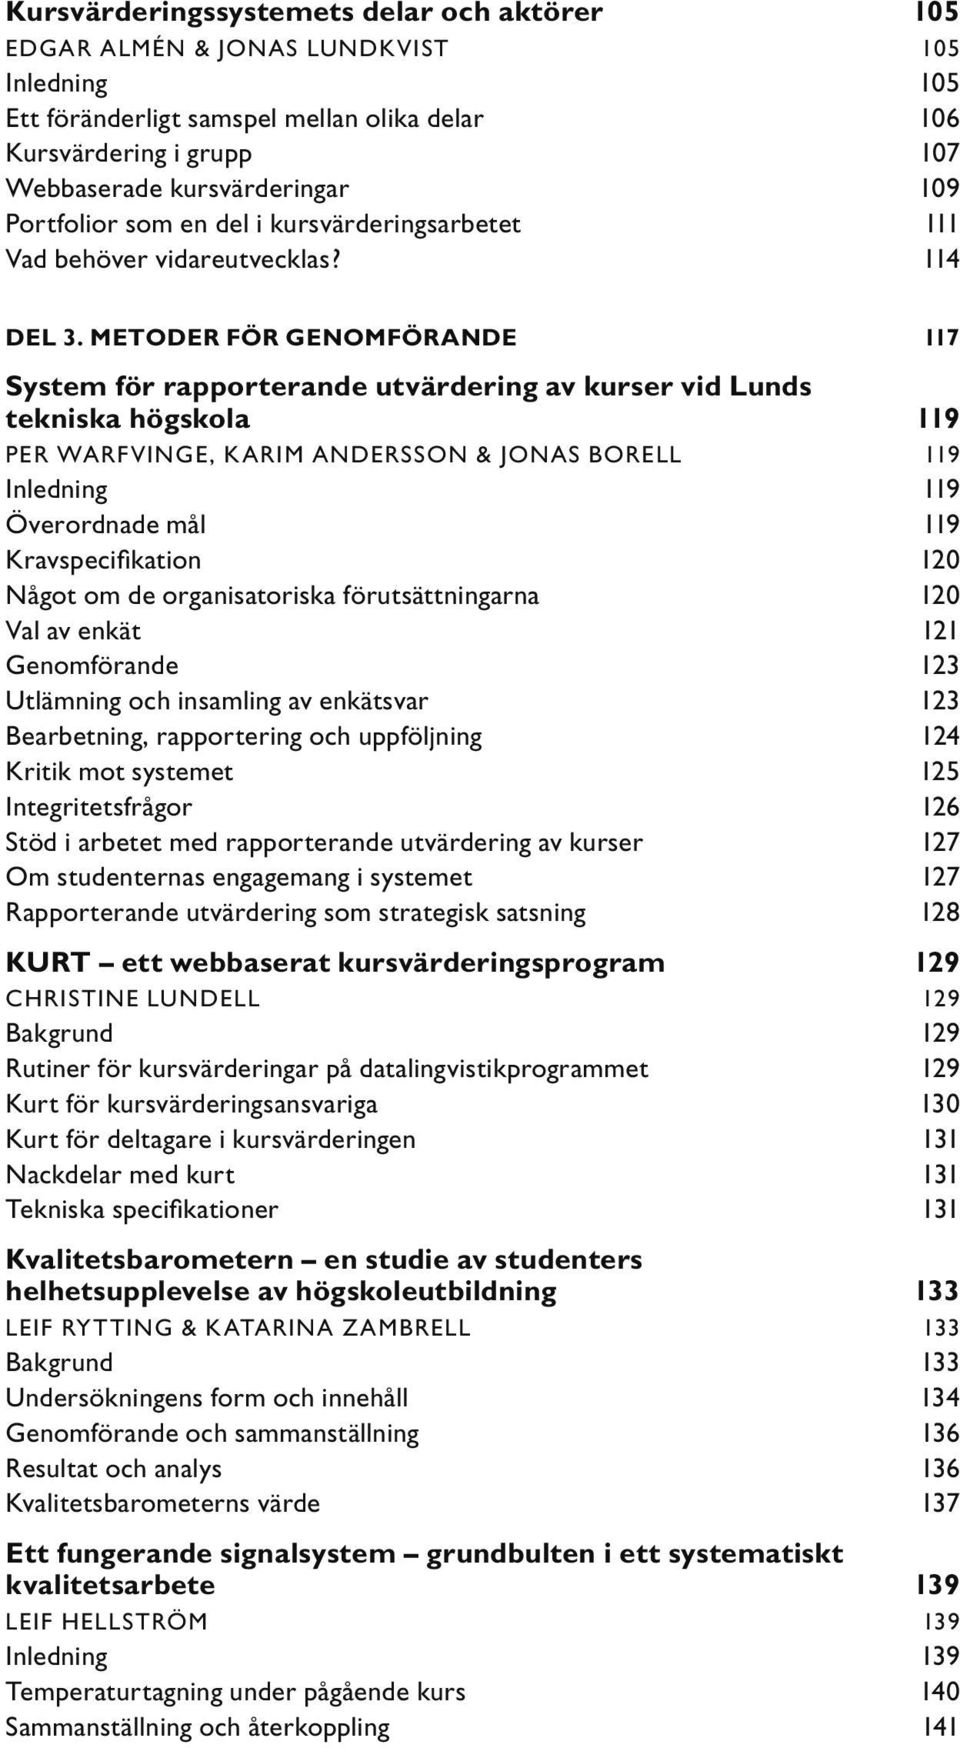 METODER FÖR GENOMFÖRANDE 117 System för rapporterande utvärdering av kurser vid Lunds tekniska högskola 119 PER WARFVINGE, KARIM ANDERSSON & JONAS BORELL 119 Inledning 119 Överordnade mål 119